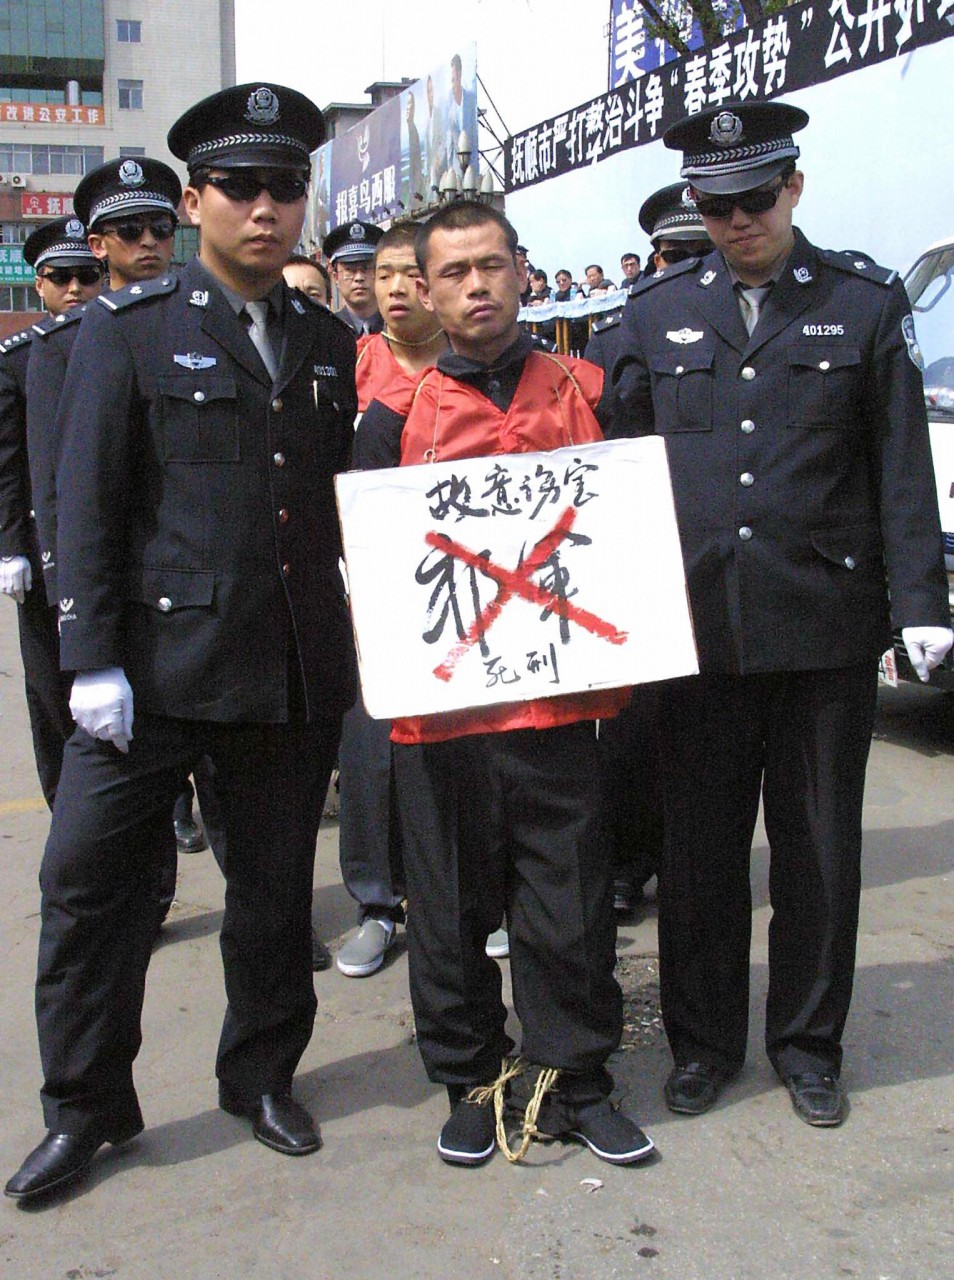 Заключенный в Шэньяне (Китай), которого собираются казнить, стоит с табличкой на шее. На верхней строке таблички - его преступление, ниже - зачеркнутое двумя красными линиями имя, указывающие, что заключенный приговорен к смерти. Фото: AFP/Getty Images